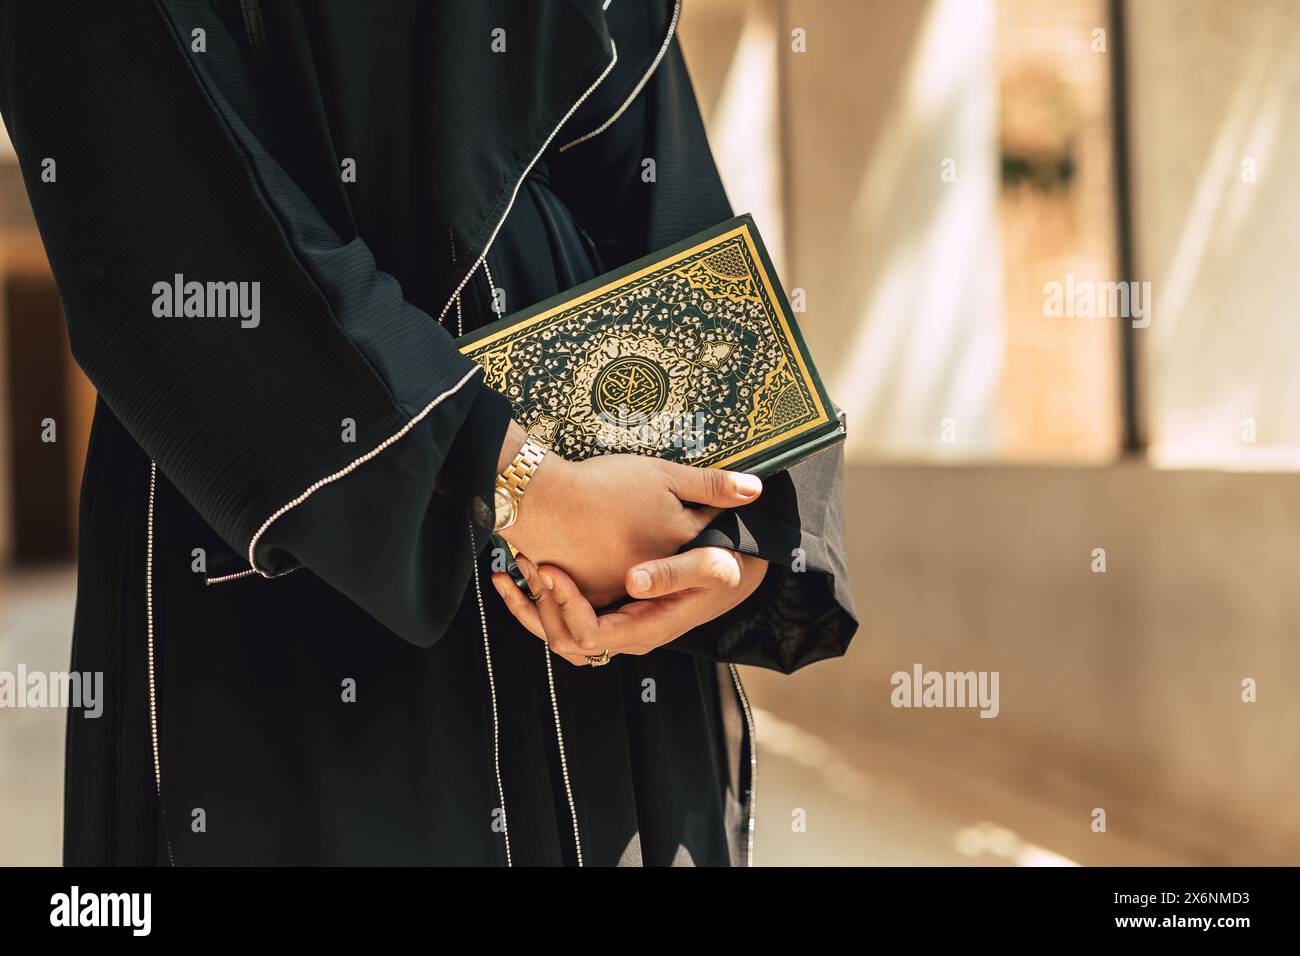 Copertina del libro del Sacro Corano con calligrafia araba traduce il significato di al Corano. Primo piano gente araba che tiene a mano il libro musulmano del Corano. Foto Stock